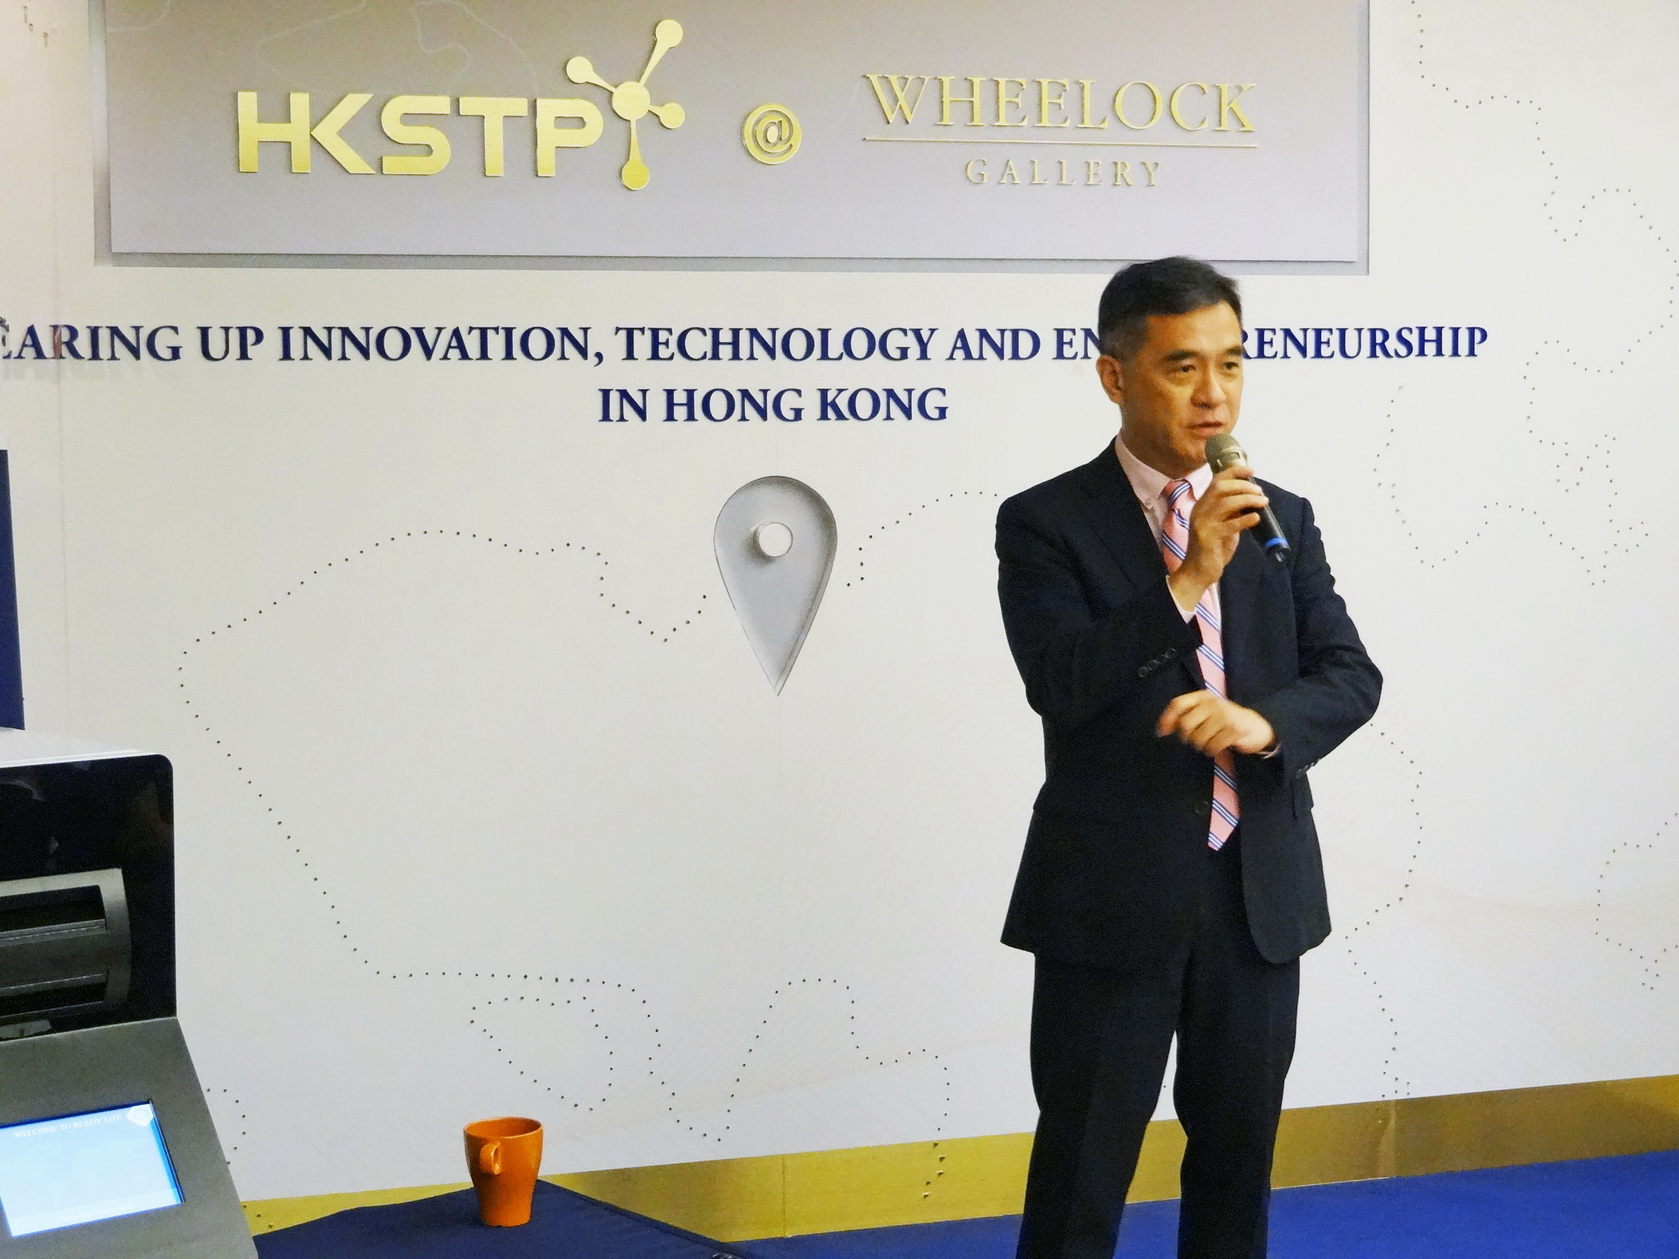 香港科技園公司科技創業培育計劃及企業加速器總監莫偉軒認為，ReadyTravel平台於旅遊業發展蓬勃的亞洲市場充滿潛力。